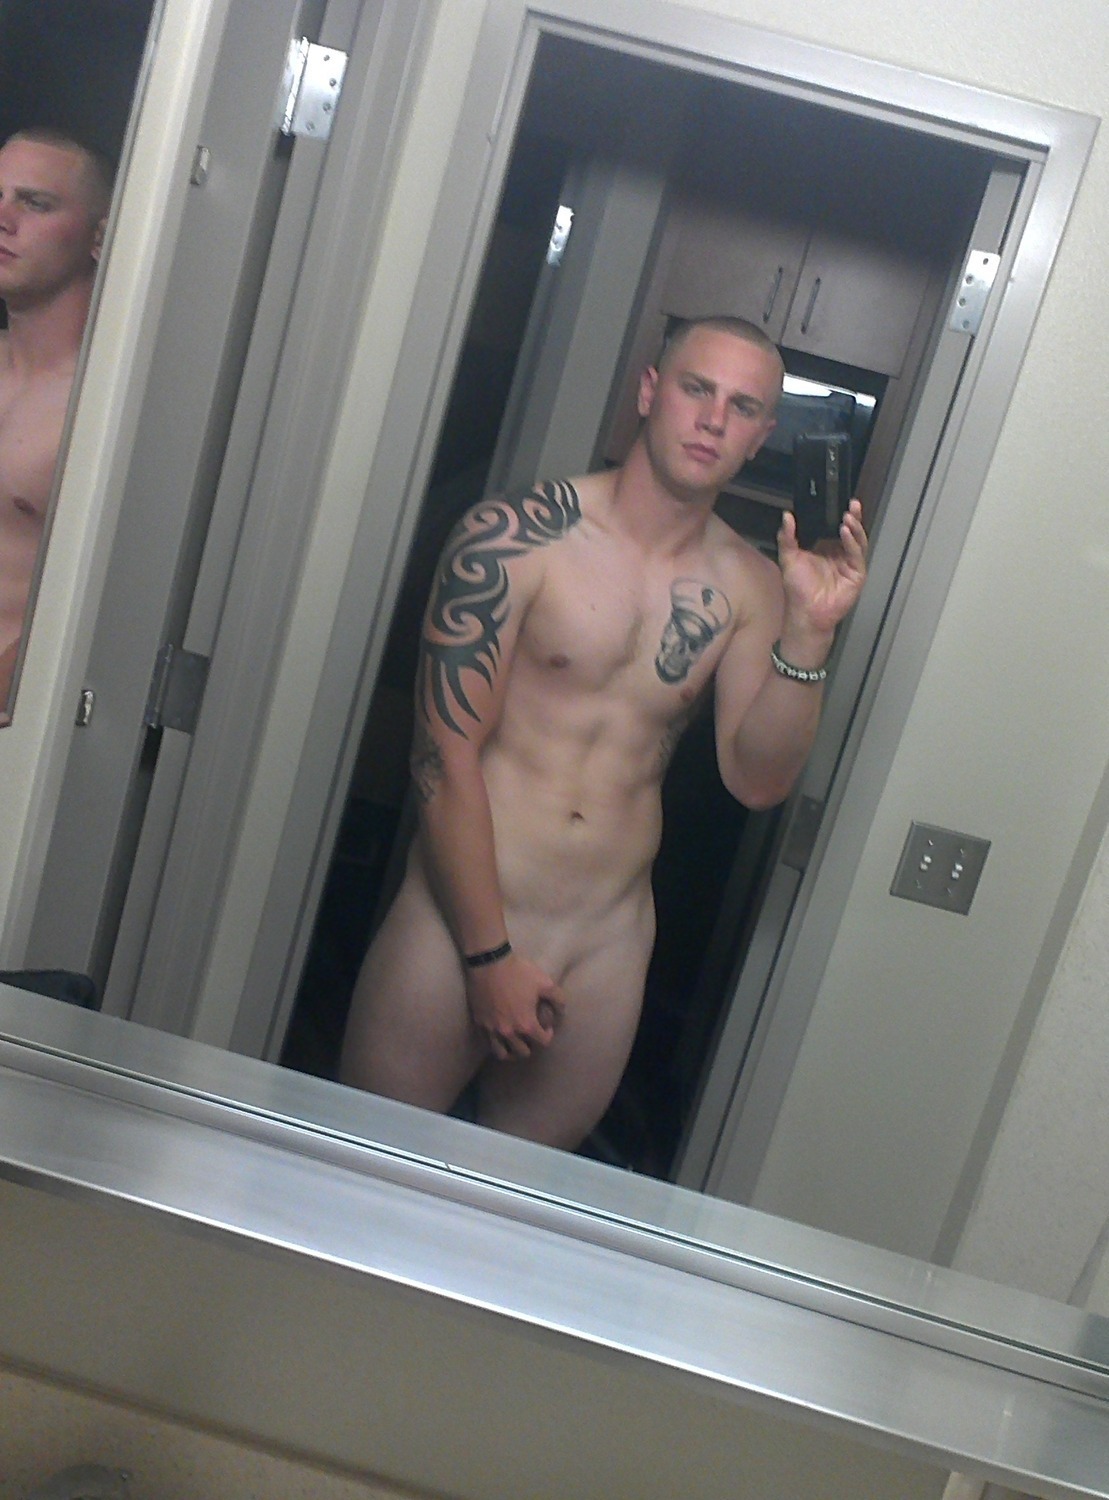 Soldiers military men naked selfie